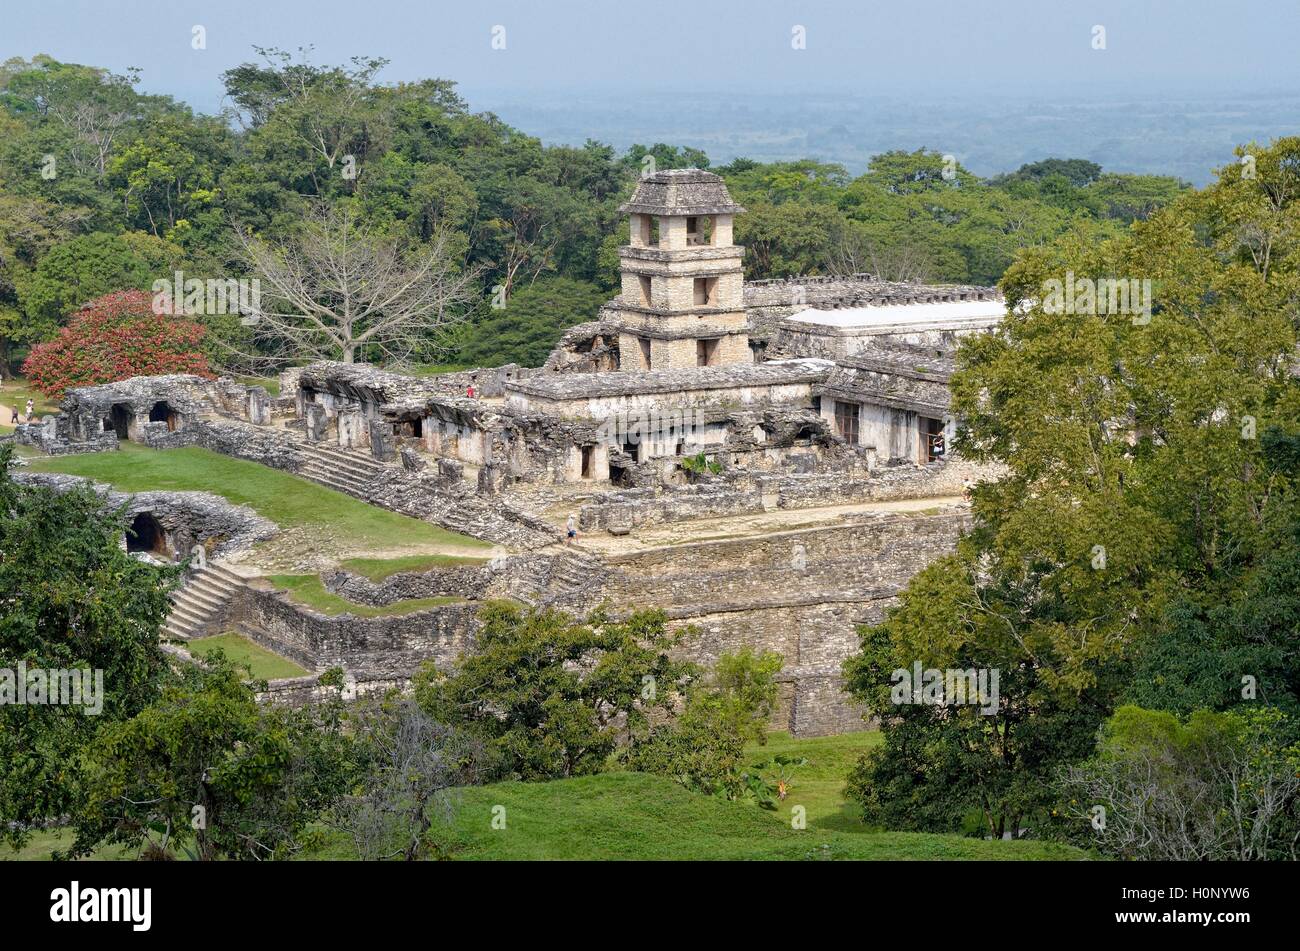 Palace El Palacio, Mayan ruins of Palenque, Palenque, Chiapas, Mexico Stock Photo